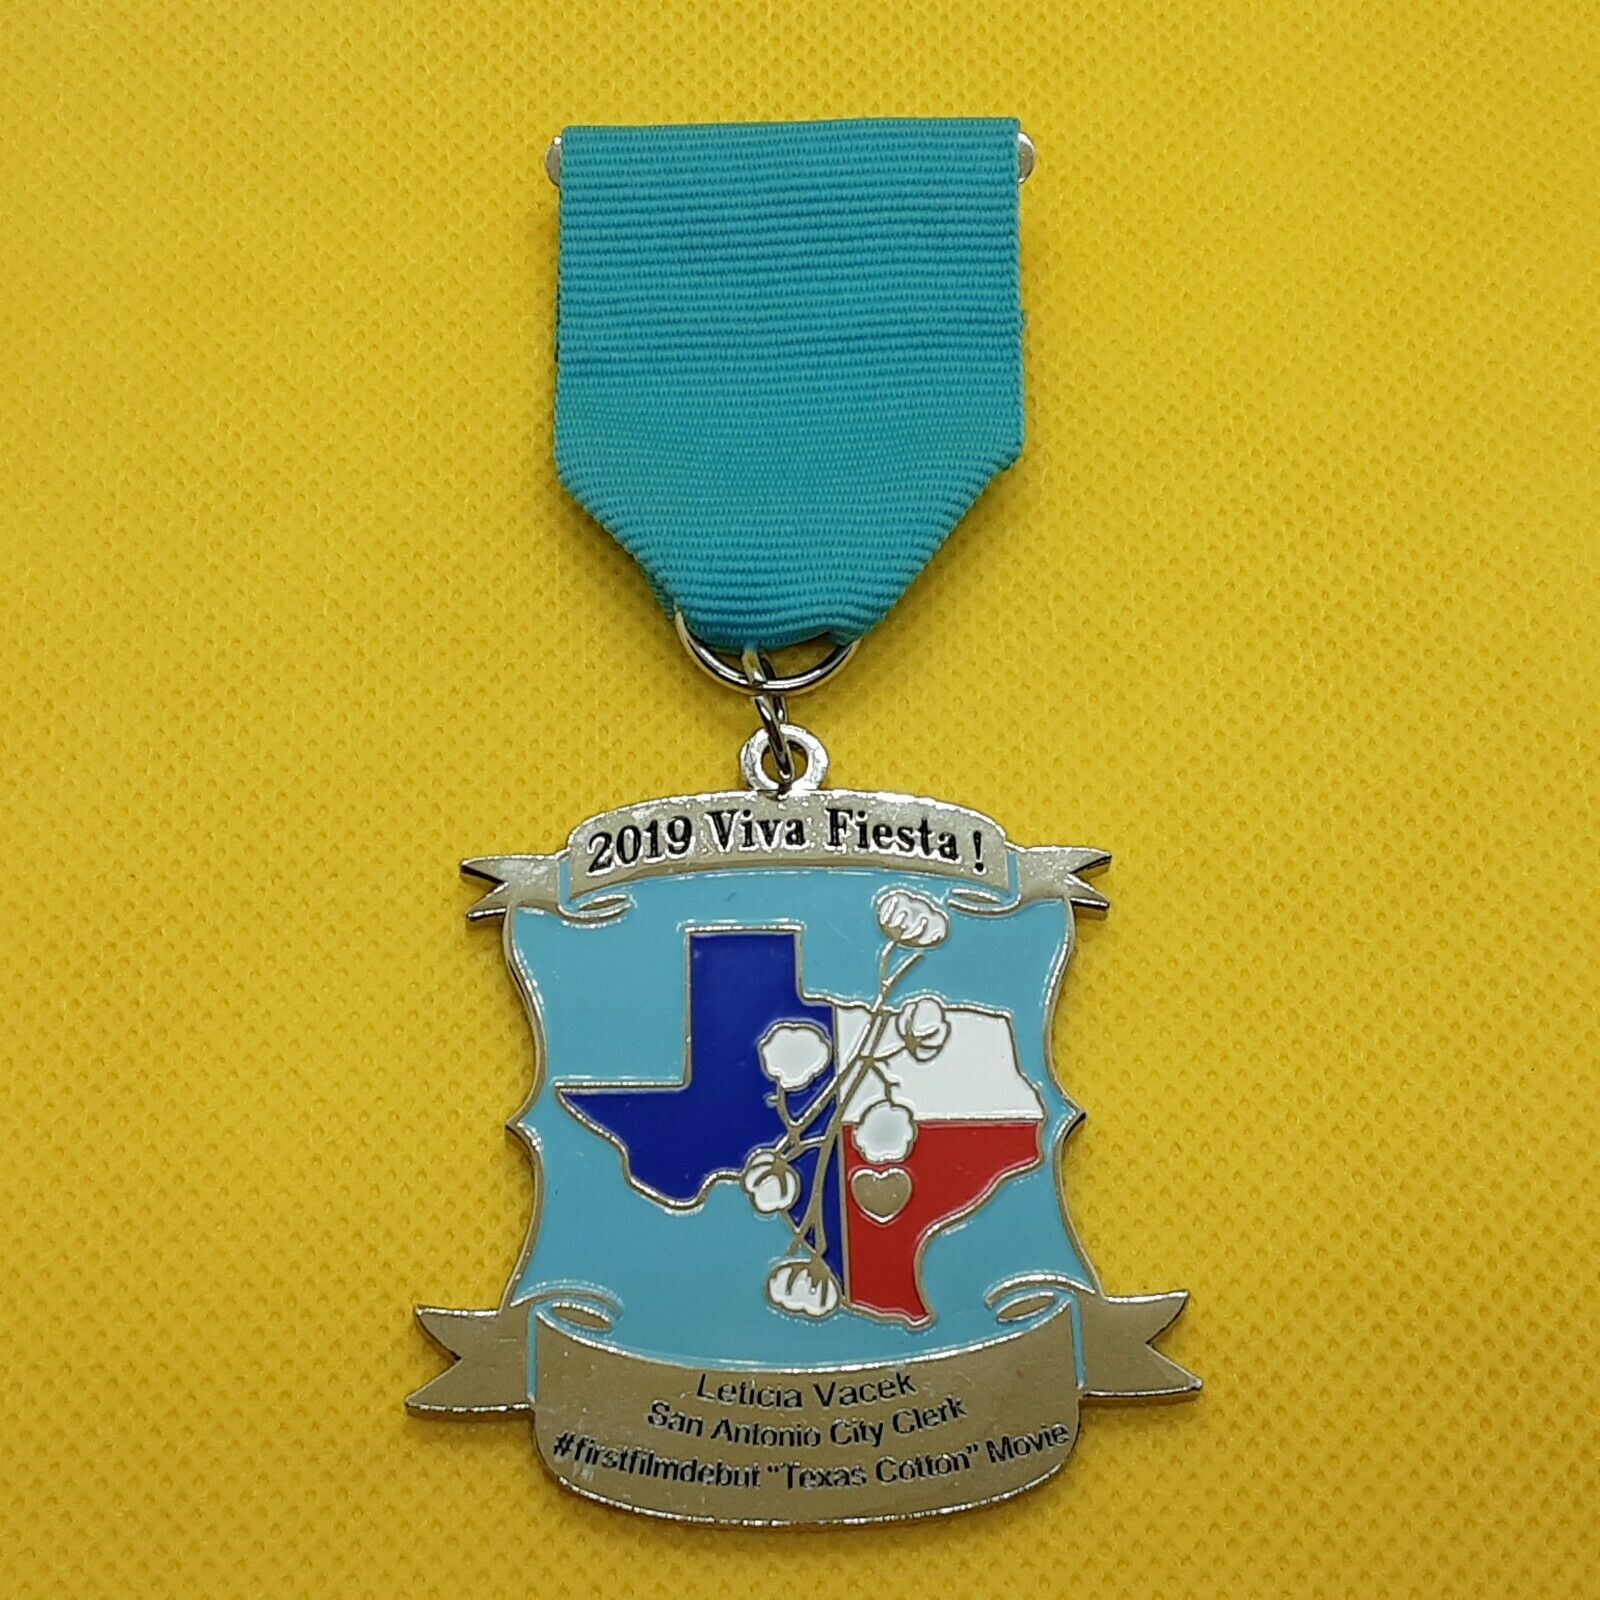 San Antonio Fiesta Medal - City Clerk Leticia M Vanek, 2019